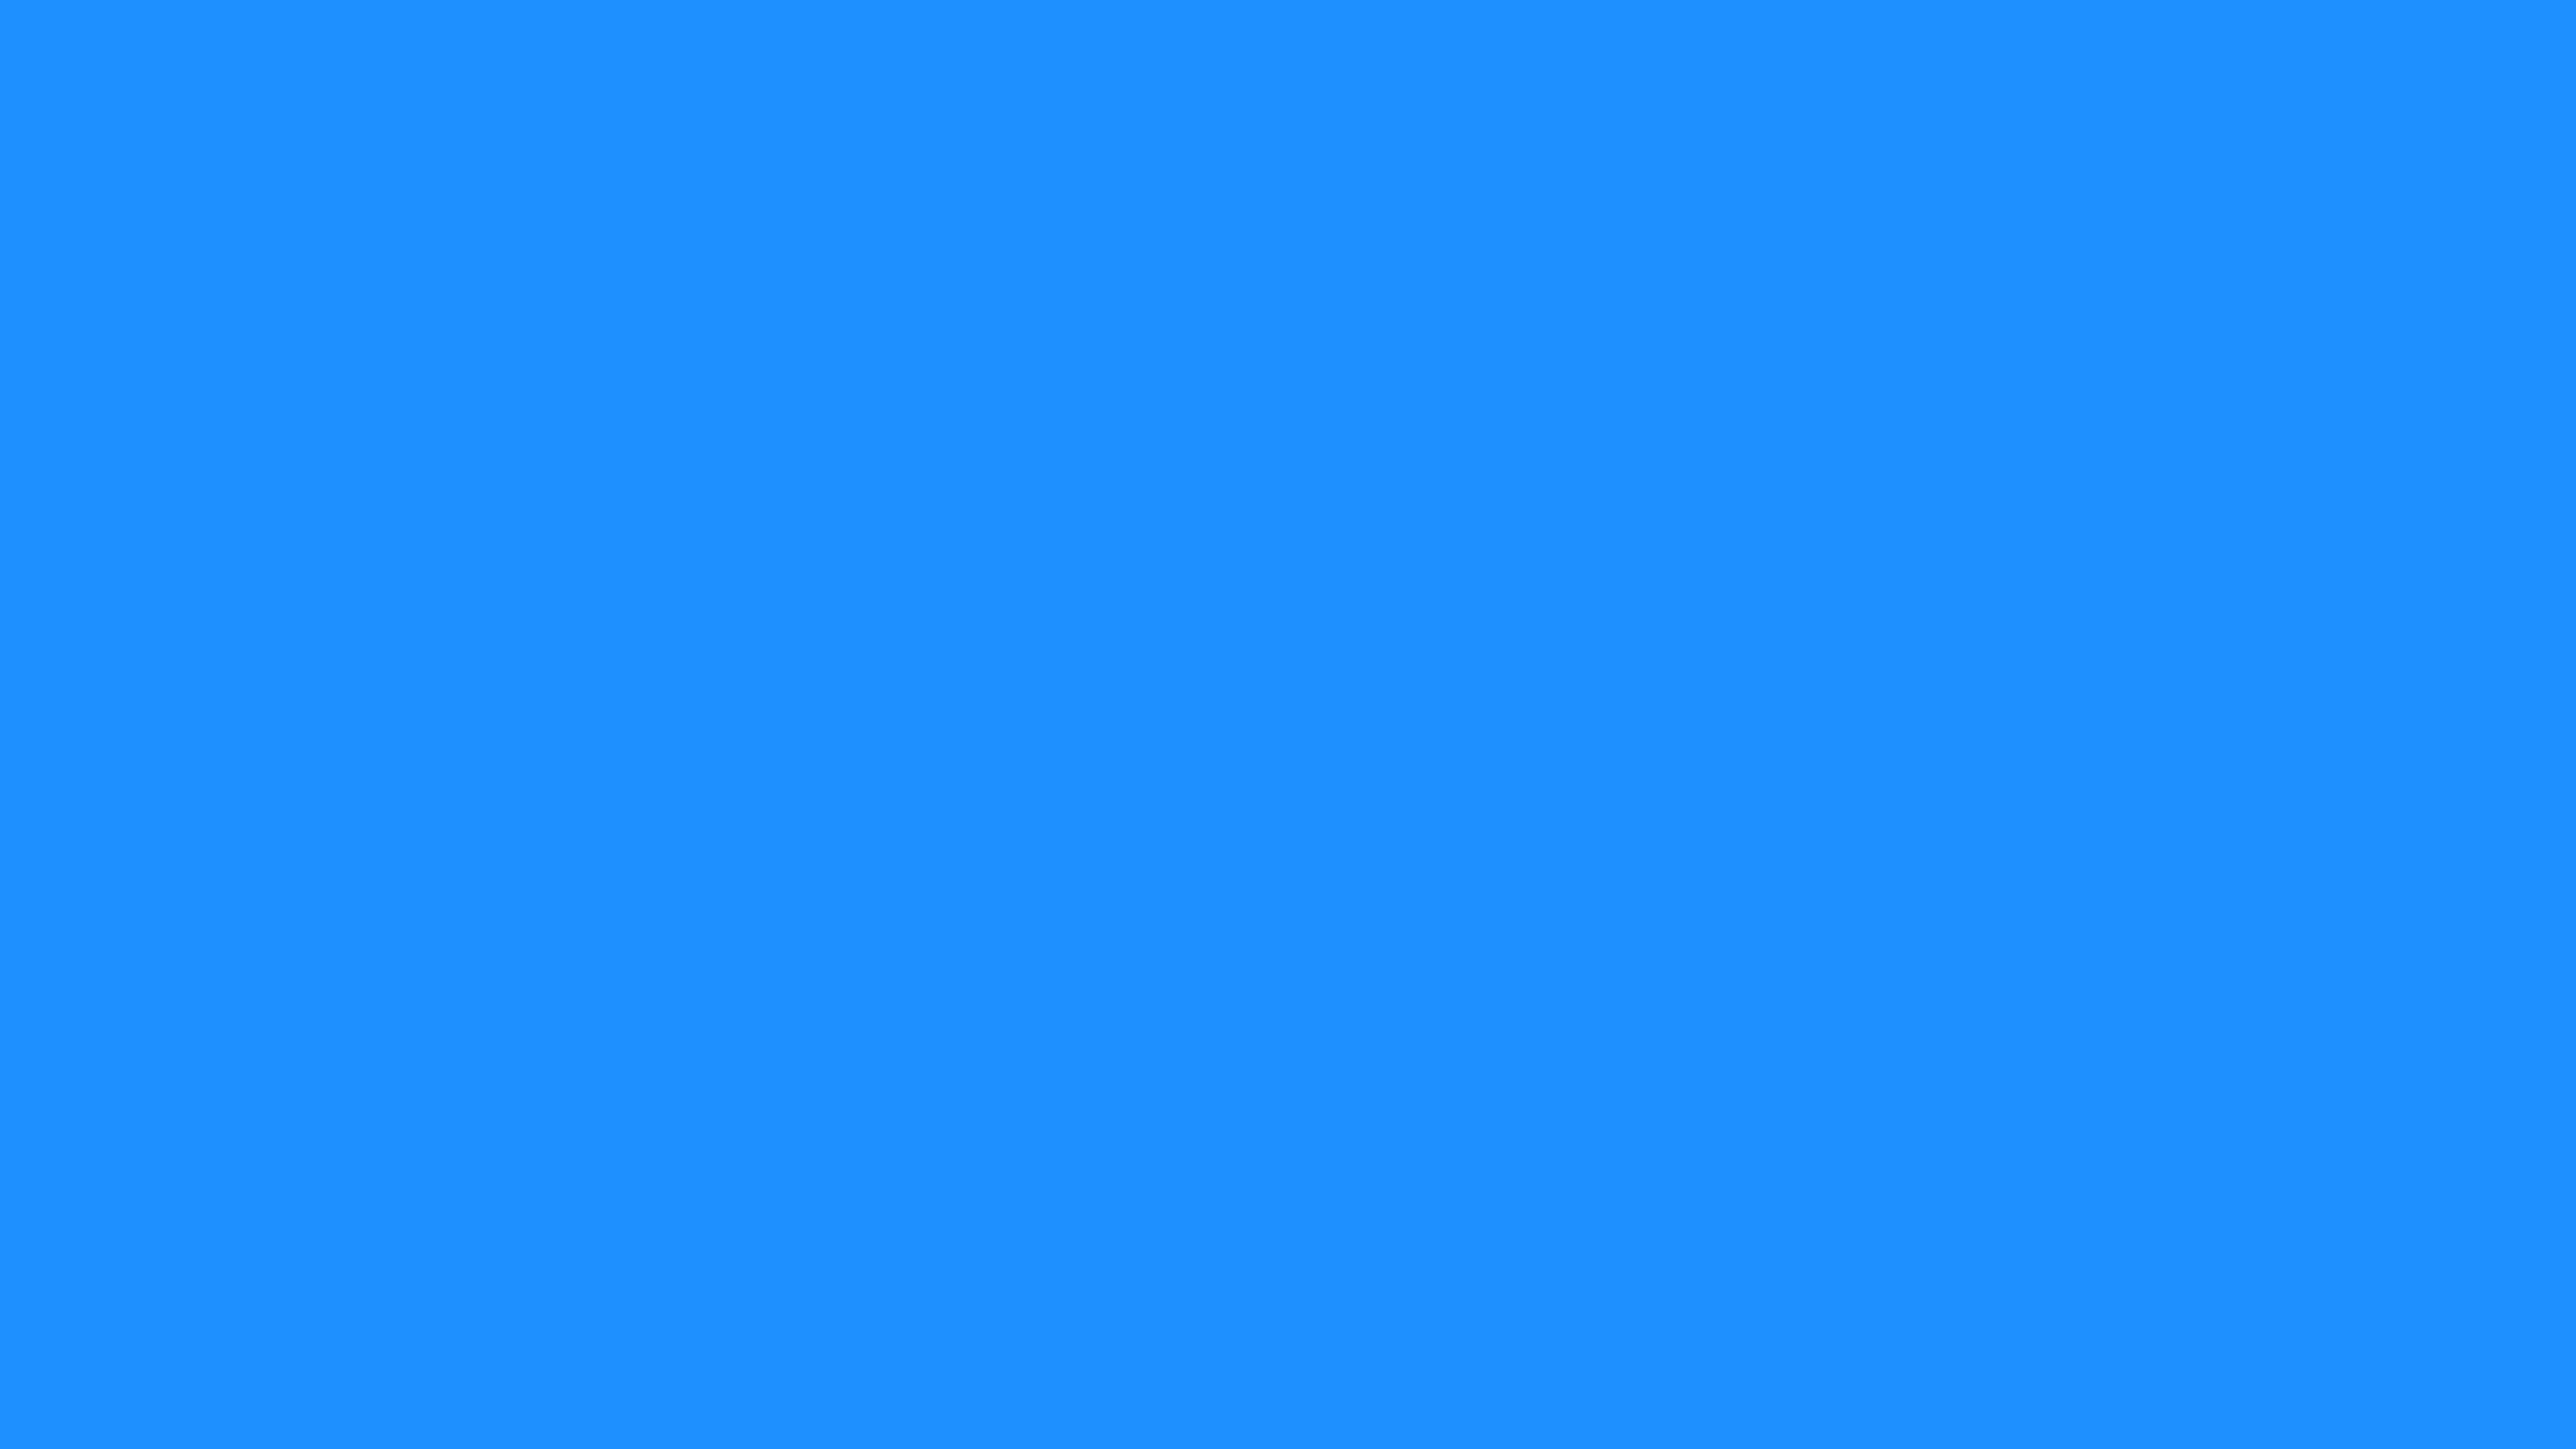 4096x2304 Dodger Blue Solid Color Background